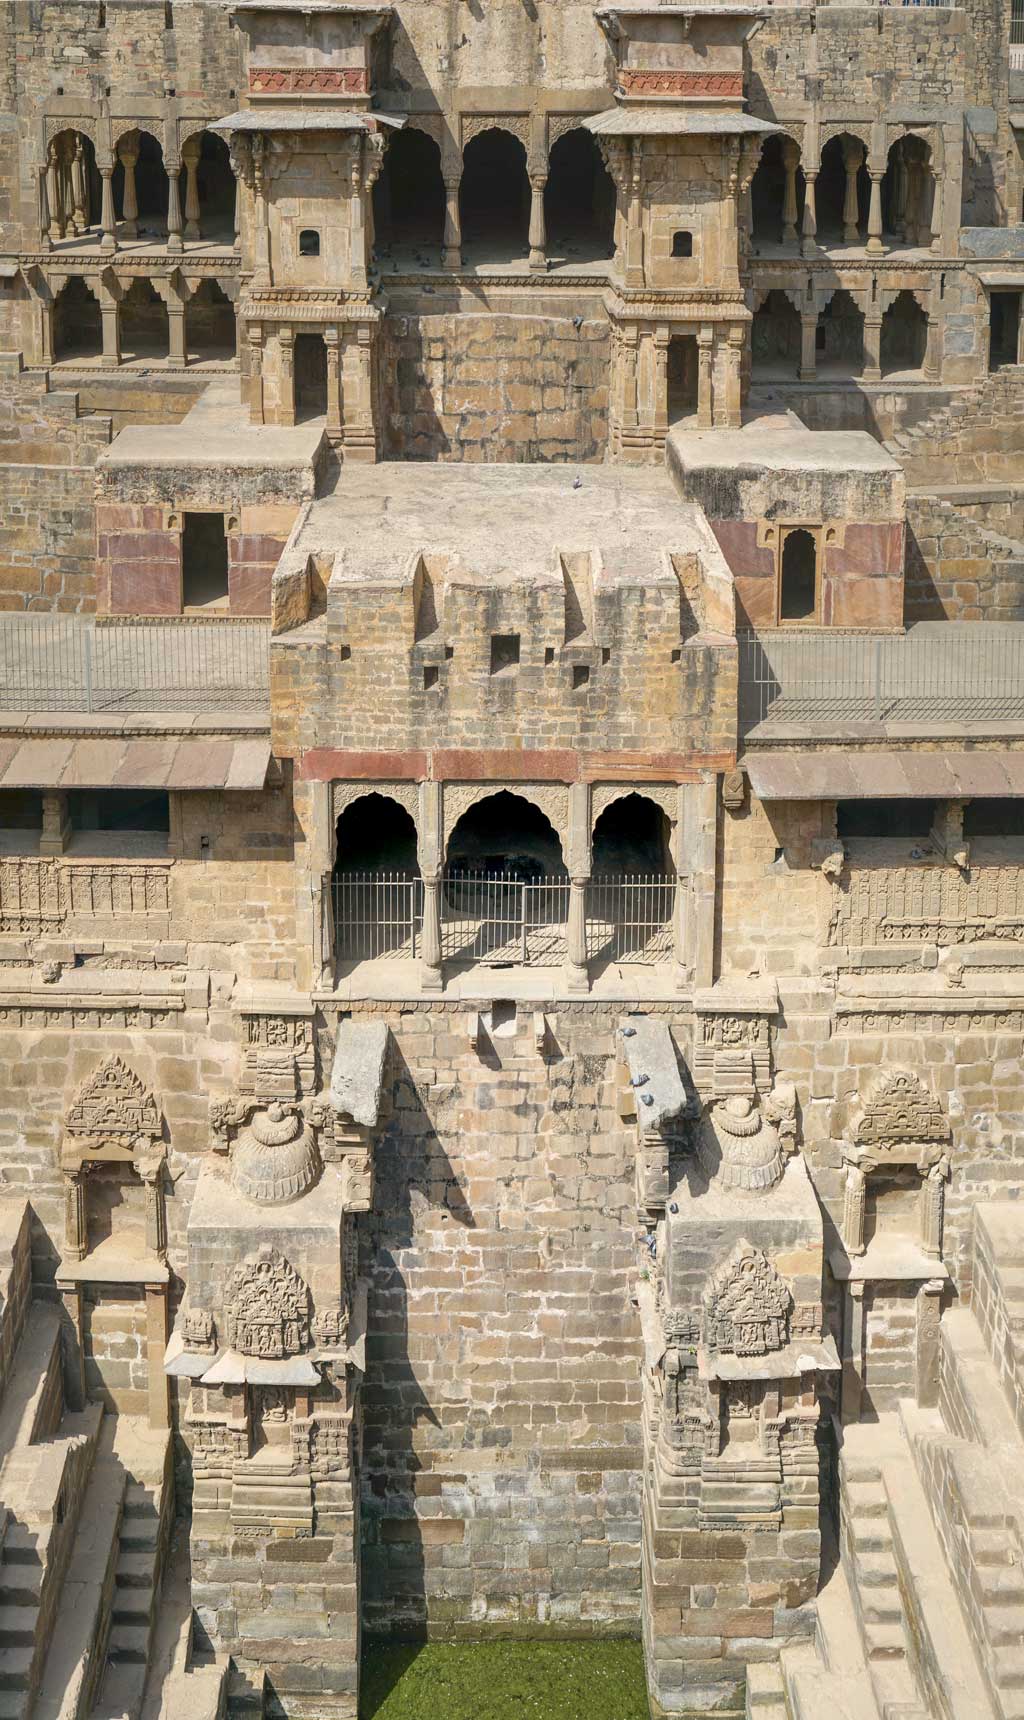 Chand-Baori-at-Abhaneri,-Hindu-and-Muslim-architecture